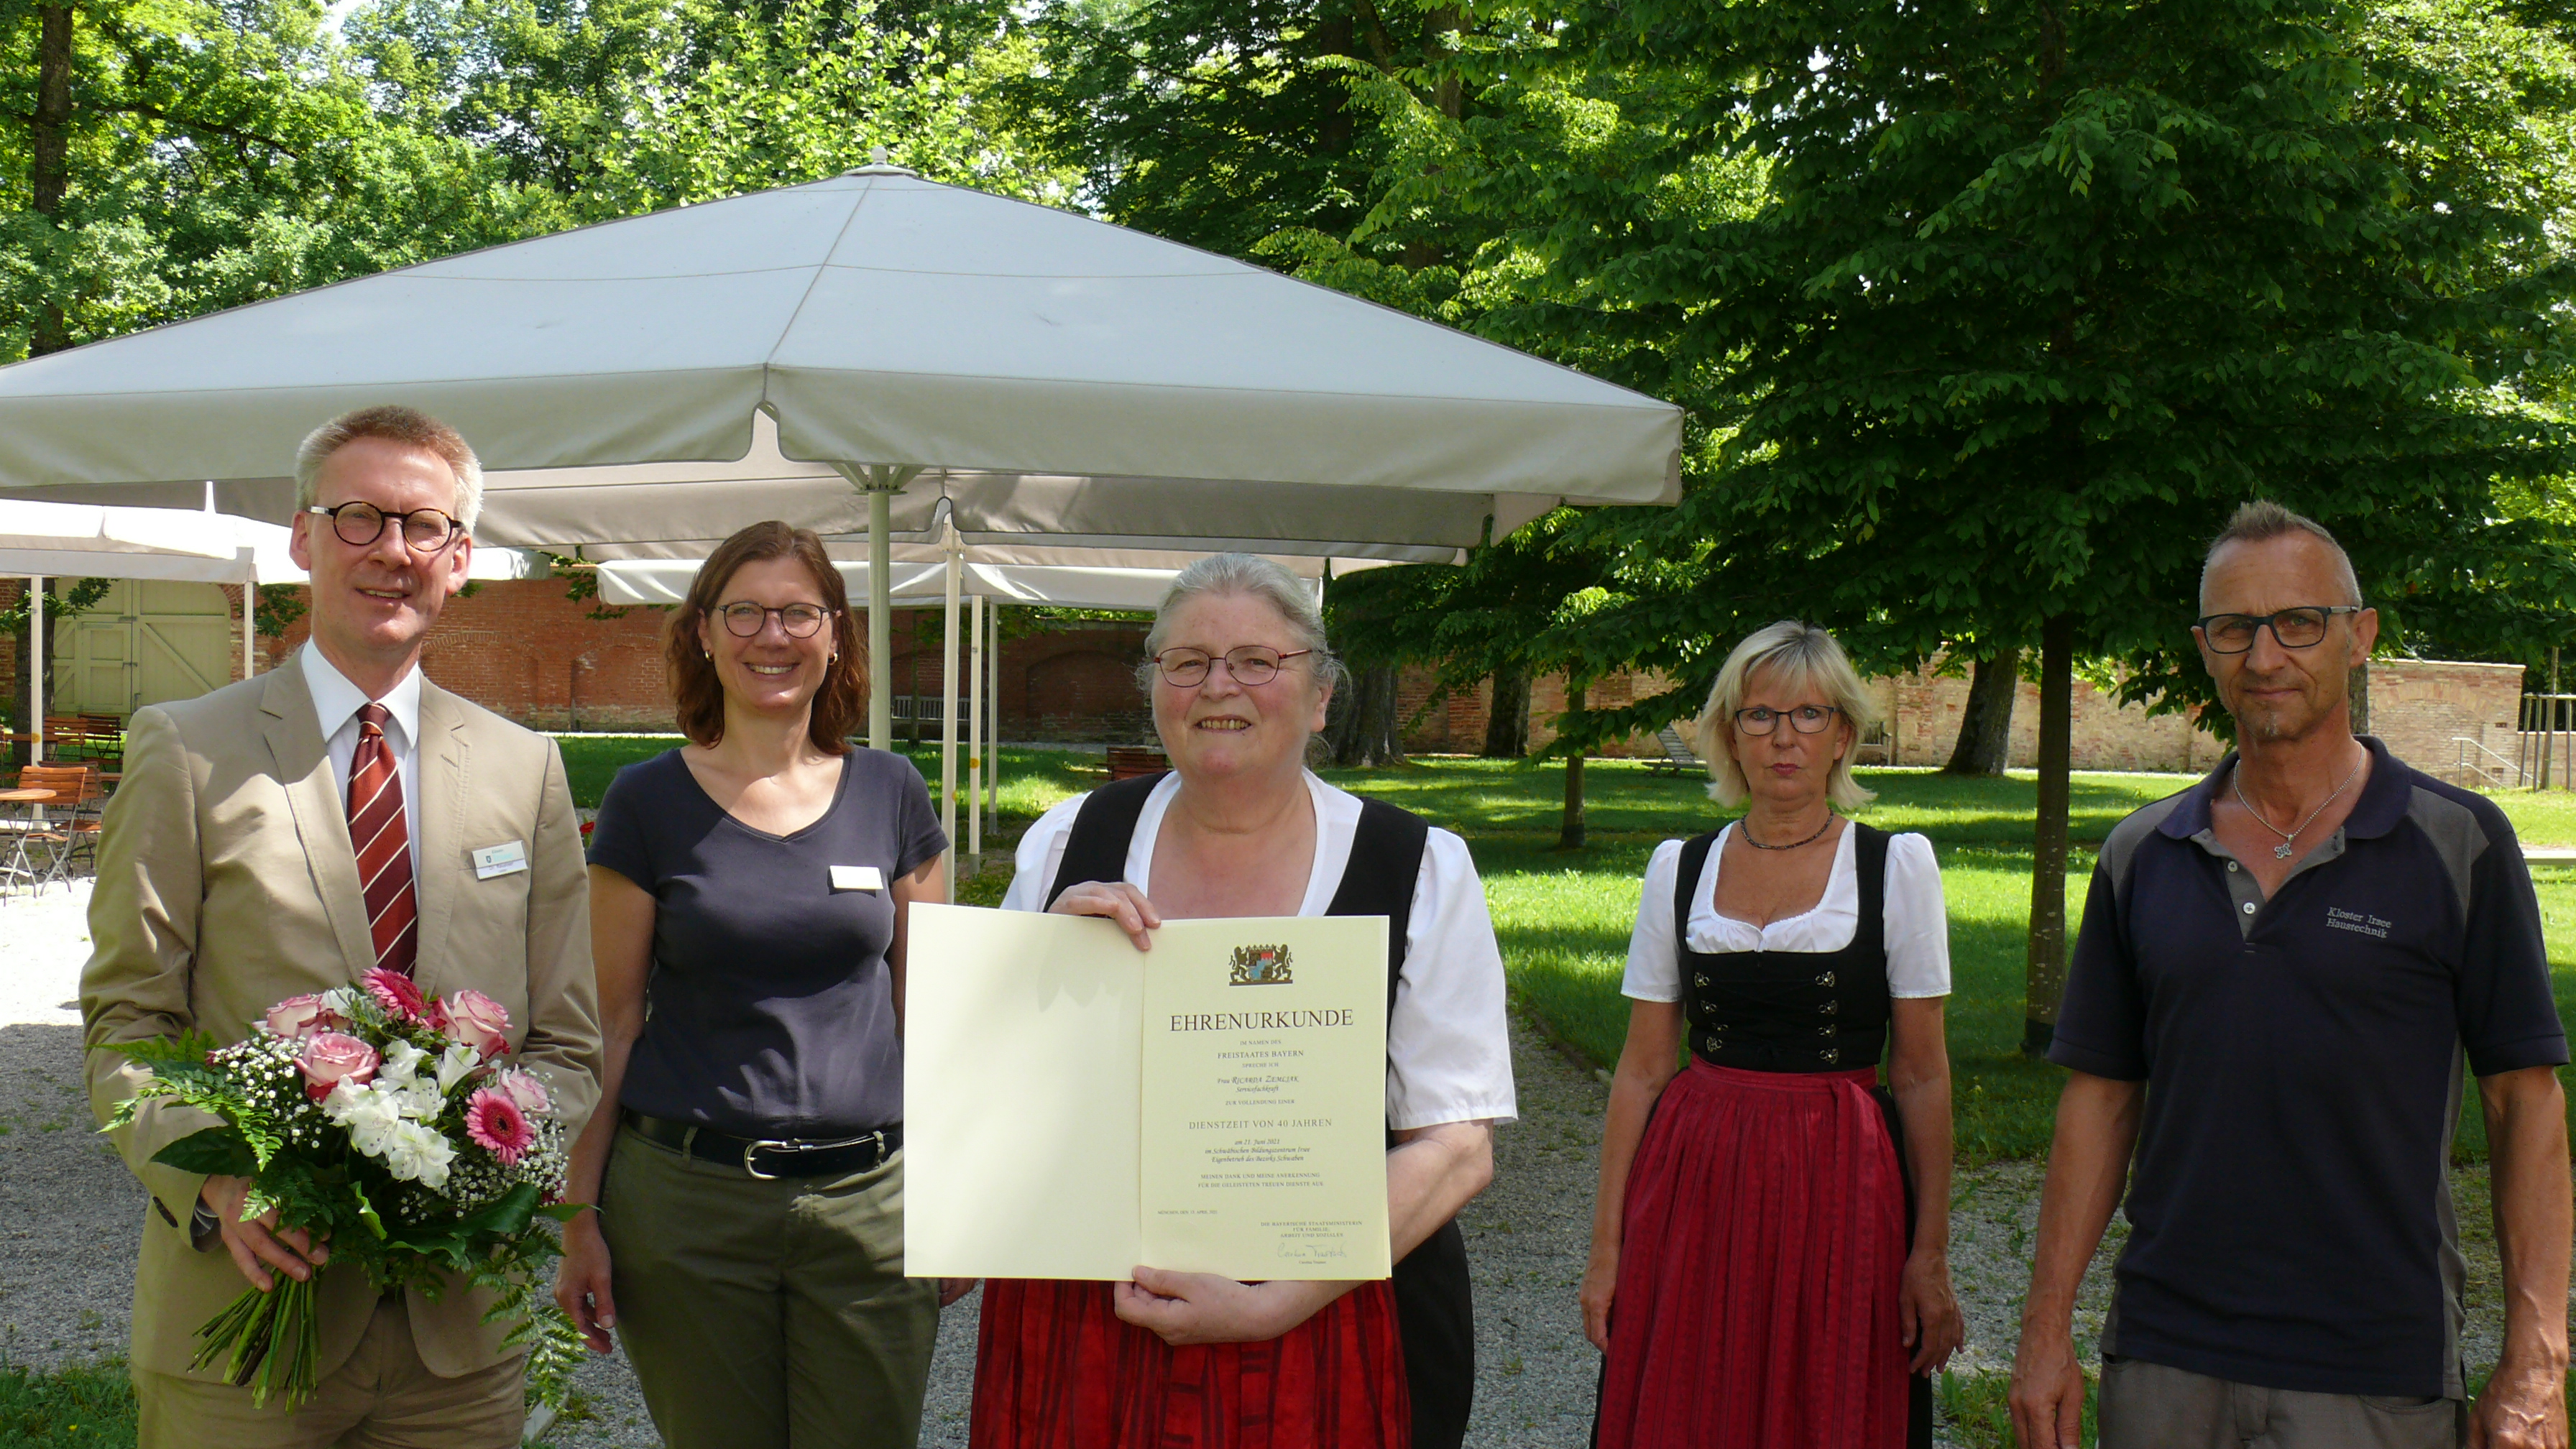 Seltenes Jubiläum in Kloster Irsee - Ricarda Zemljak seit 40 Jahren im Service des Schwäbischen Bildungszentrums tätig